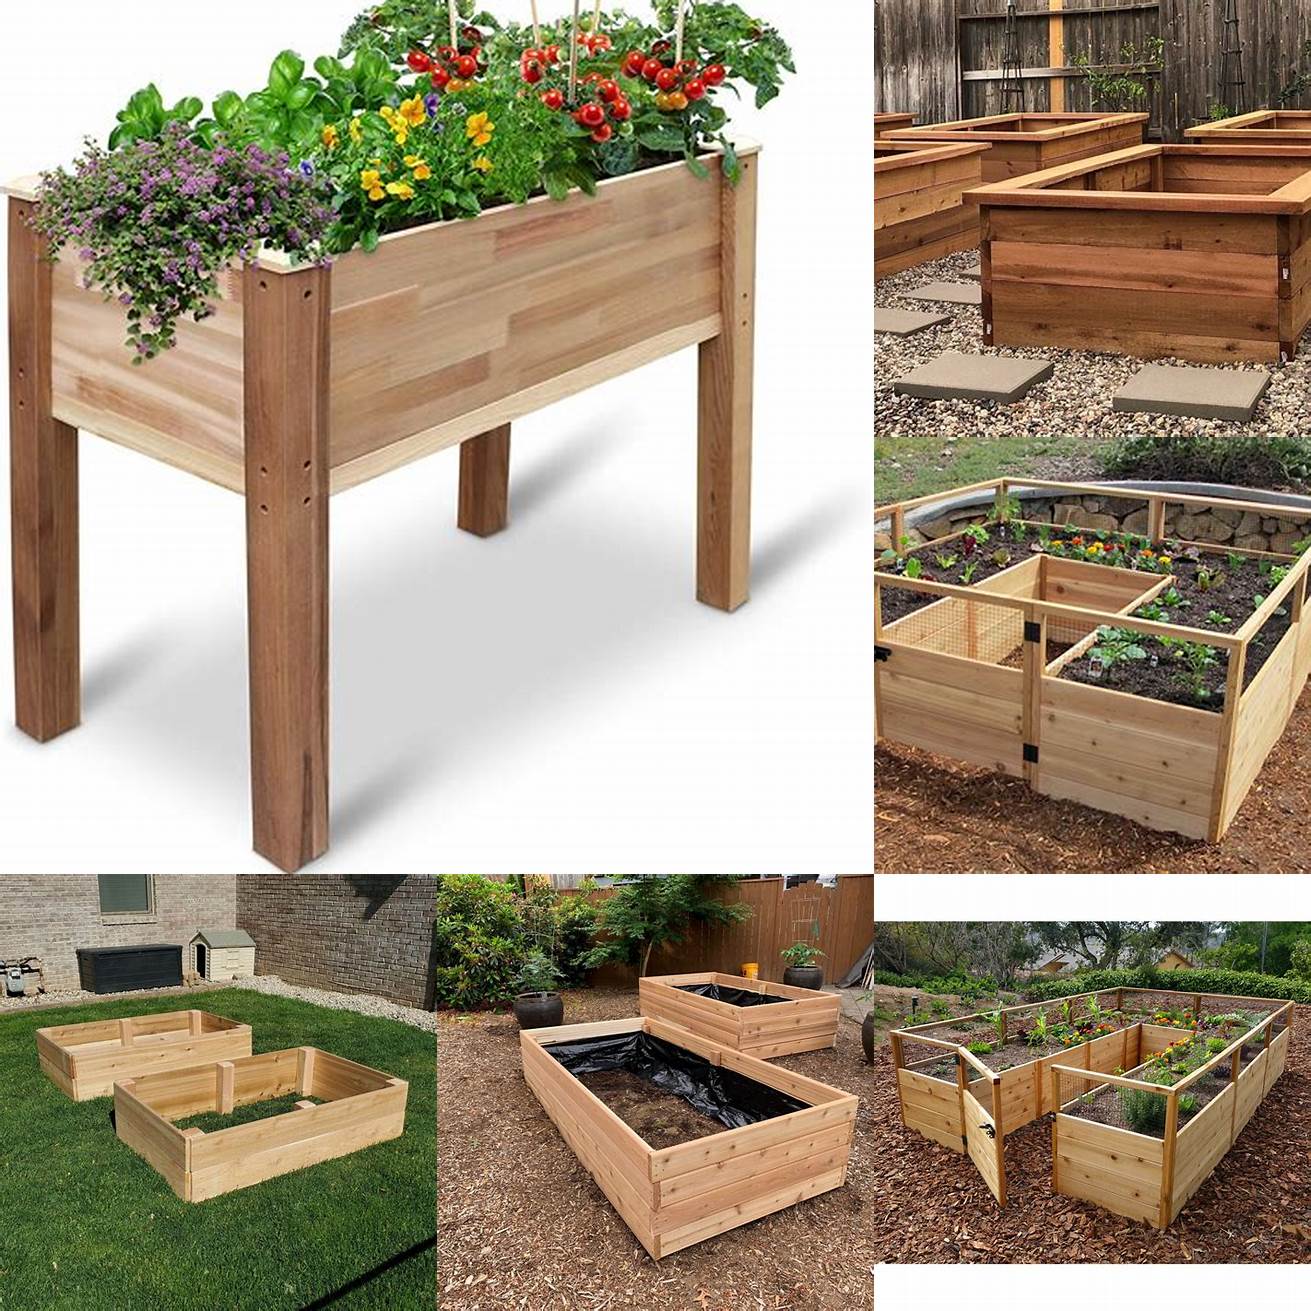 Pre-Made Purchase pre-made Cedar Raised Garden Beds